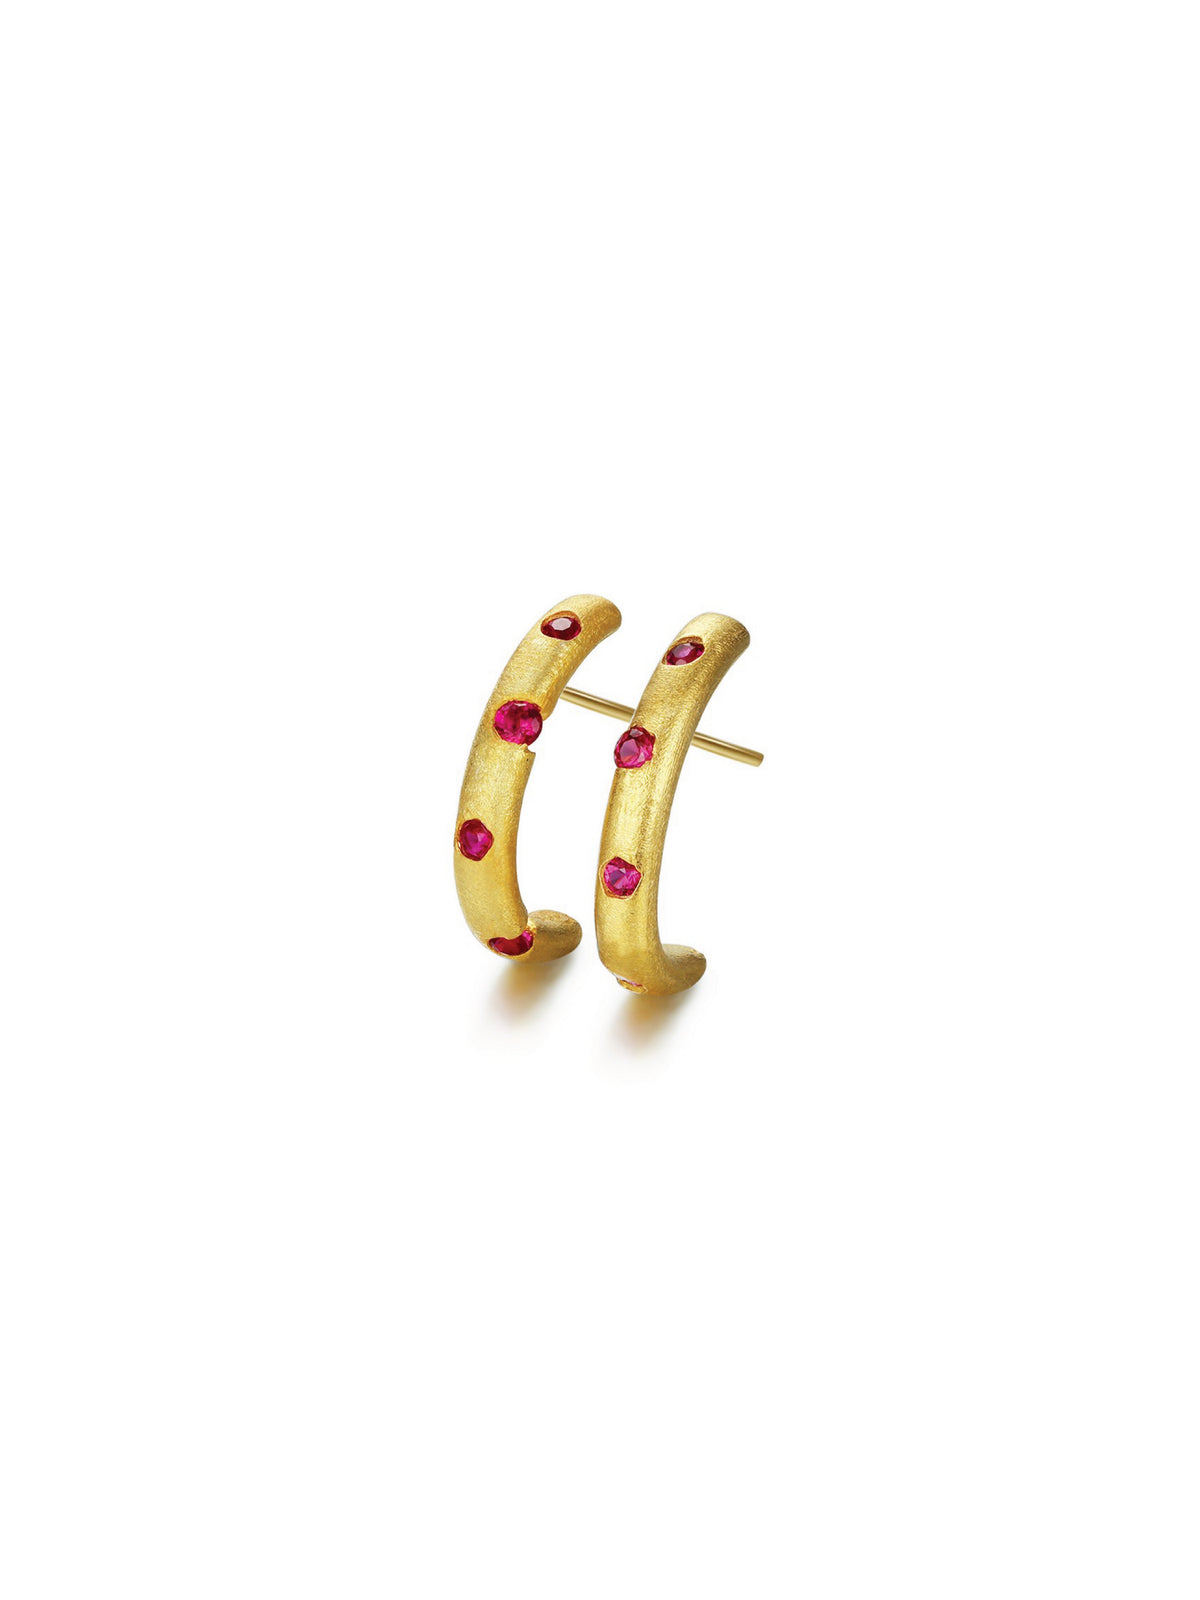 Scattered Earrings - Semi Loop (Pair)